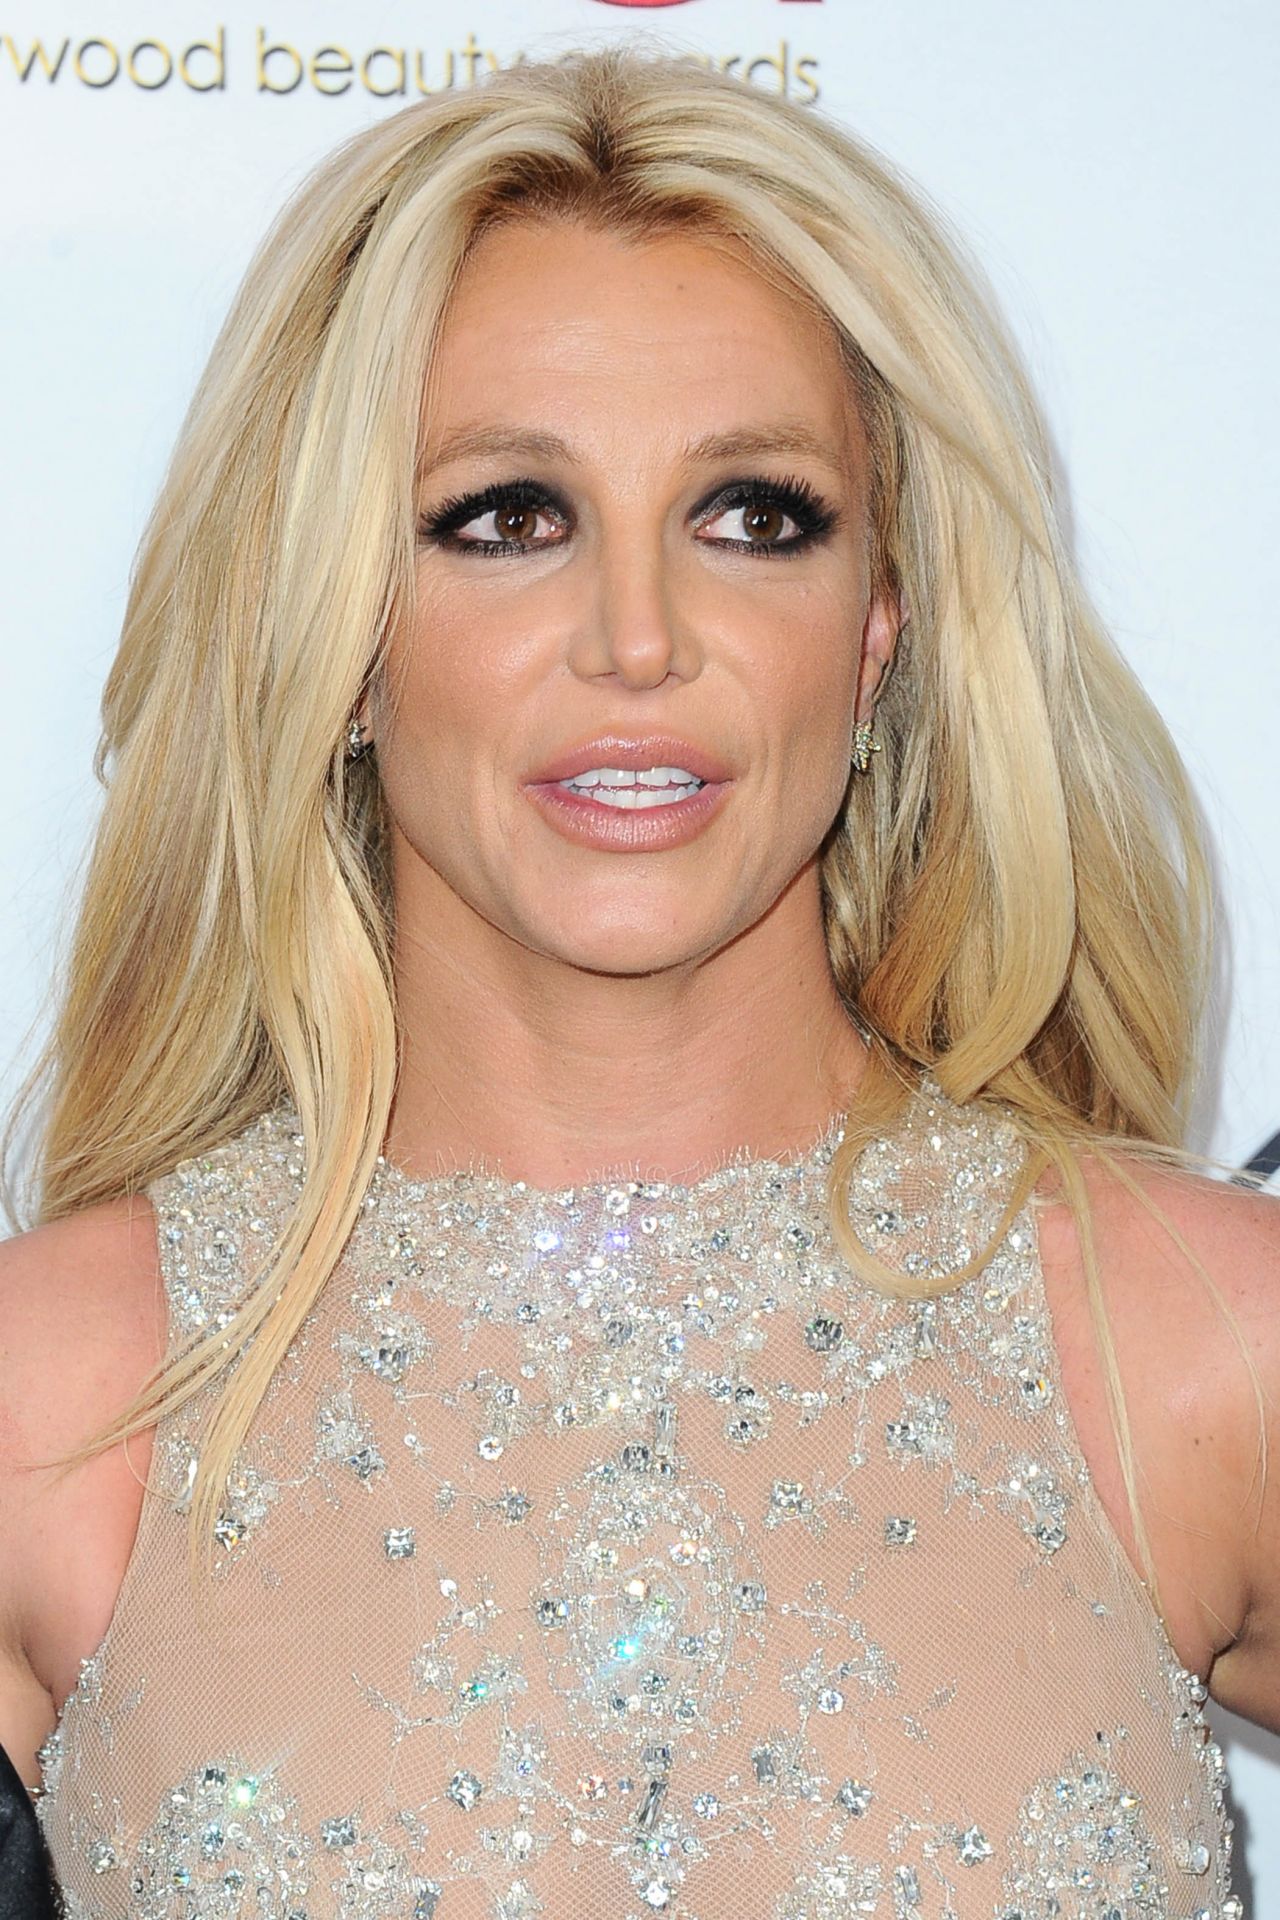 Britney Spears \u2013 2018 Hollywood Beauty Awards in LA